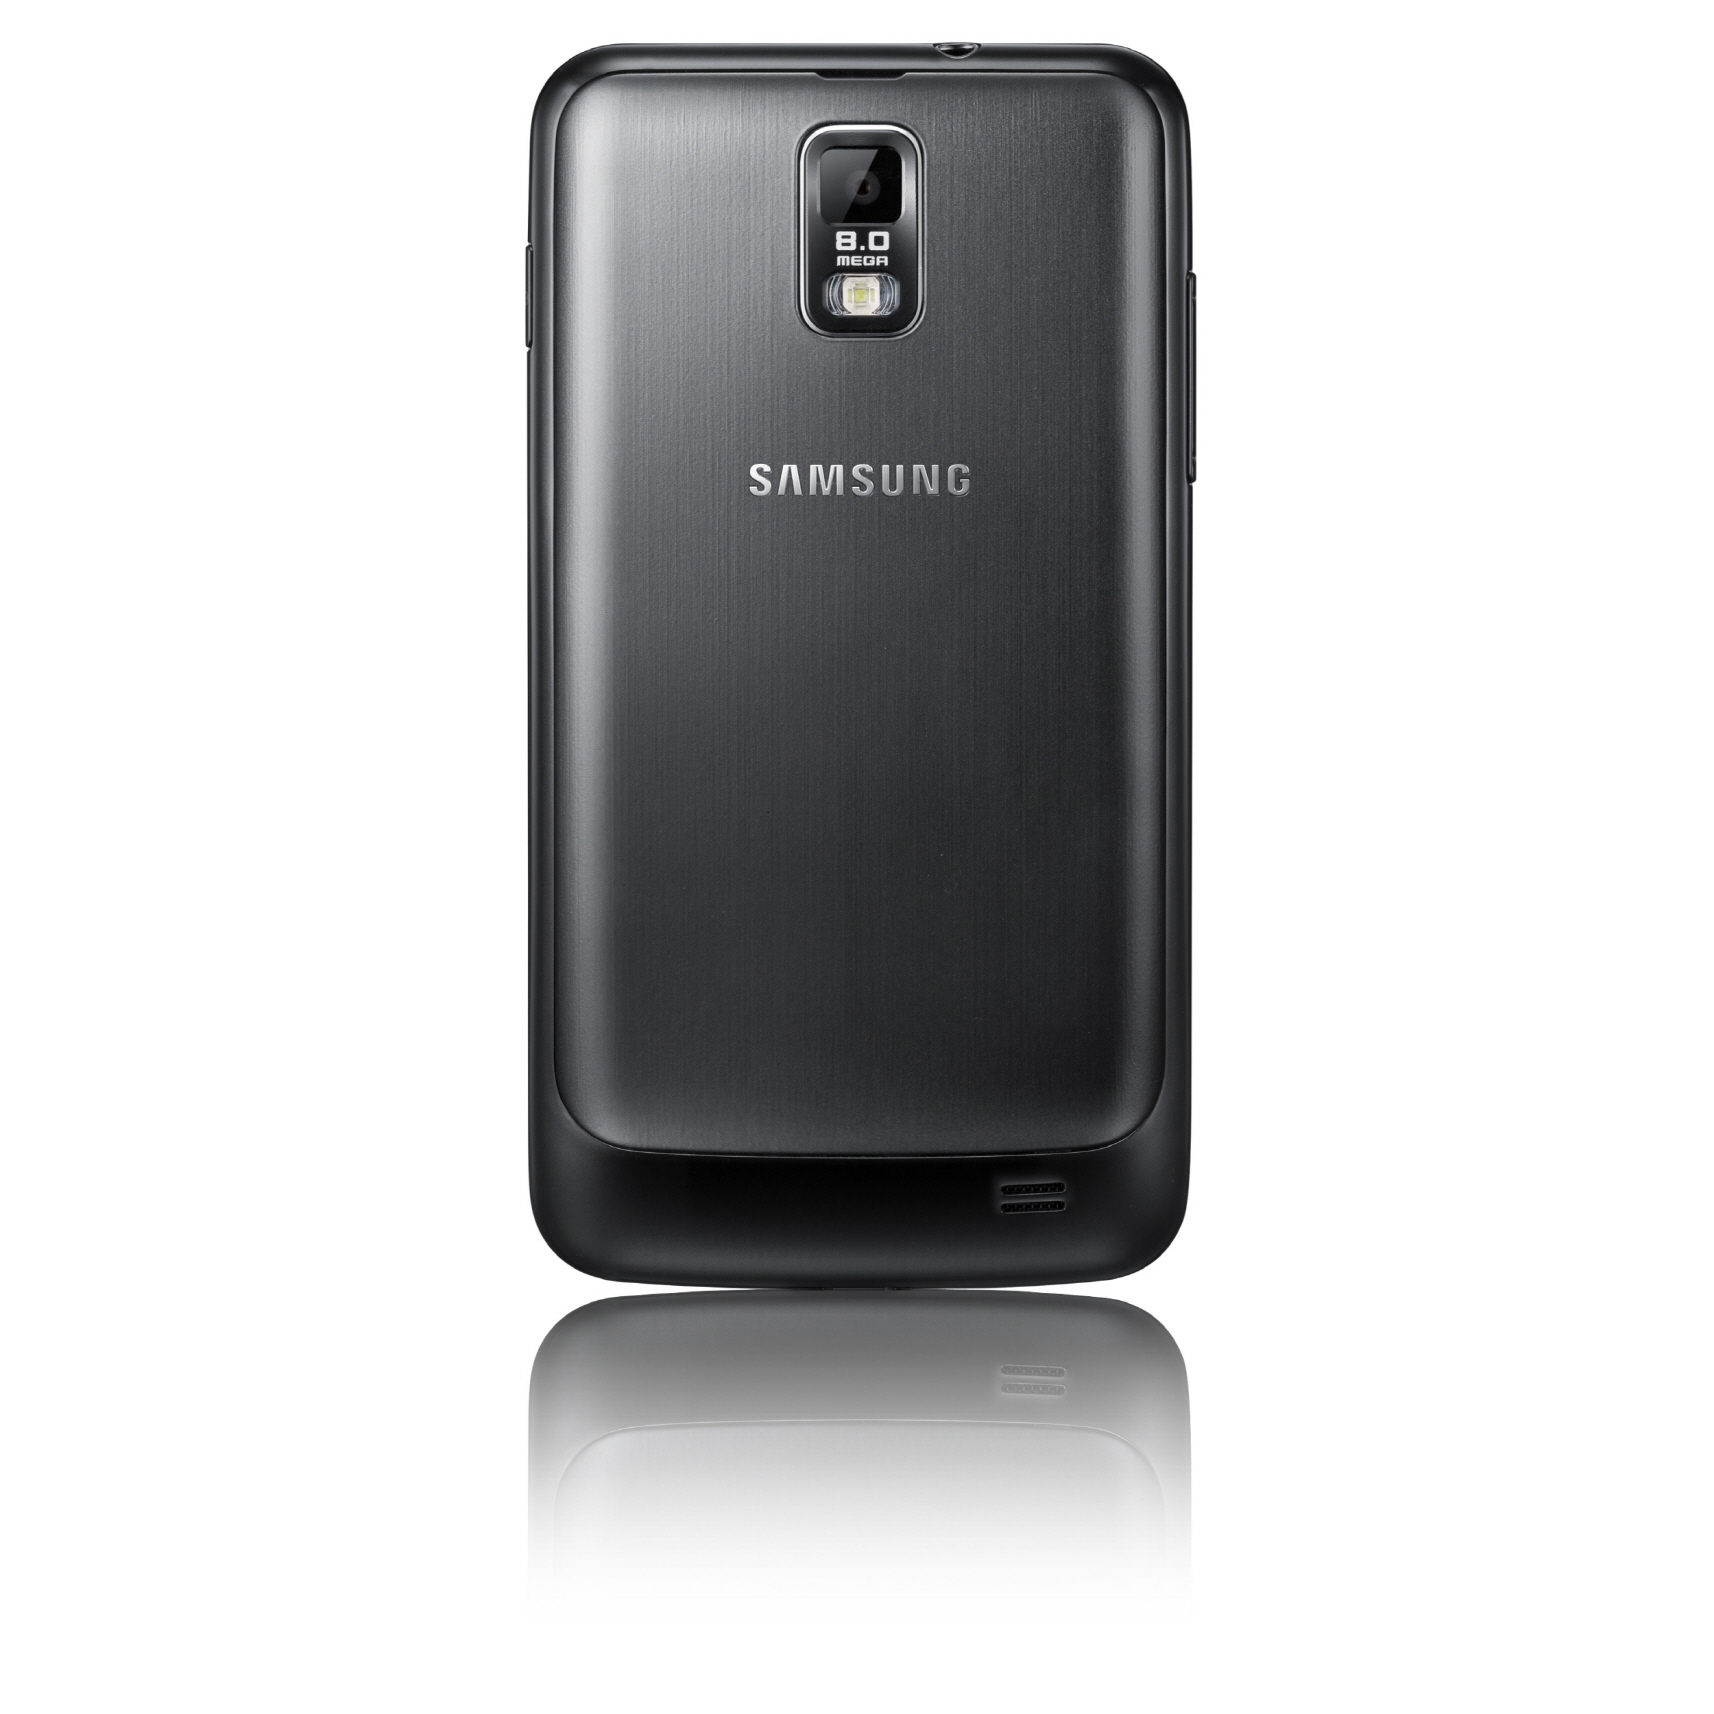 Samsung Galaxy s2 LTE